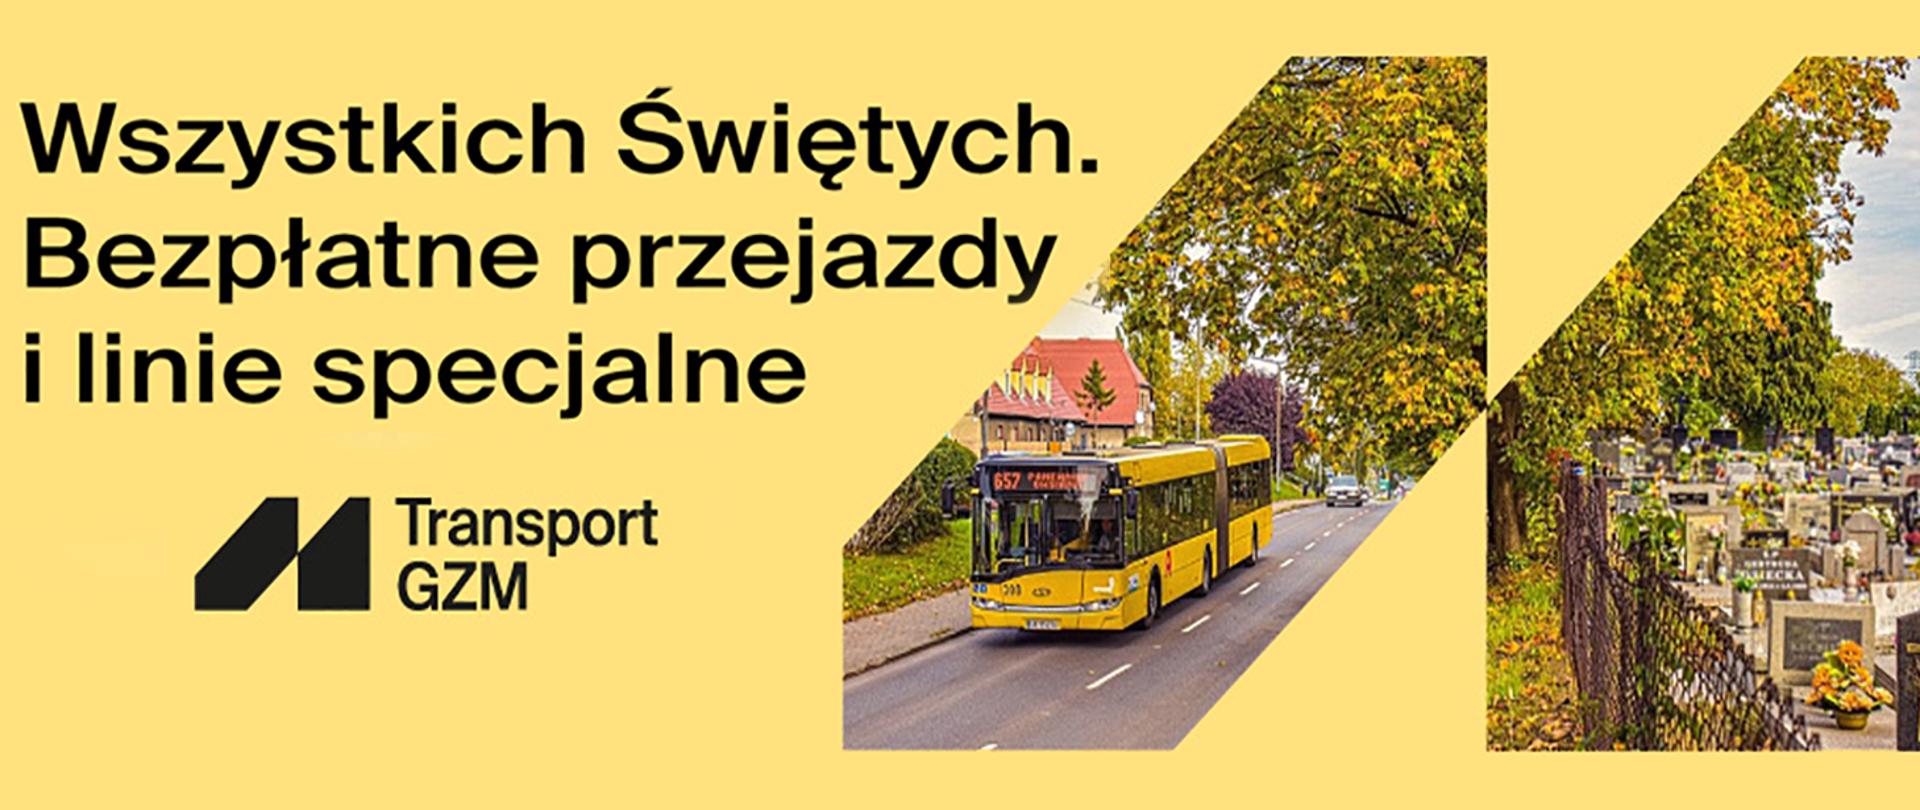 Baner informujący o bezpłatnych przejazdach GZM na Wszystkich Świętych. Zdjęcie autobusu obok zdjęcie cmentarza na żółtym tle.